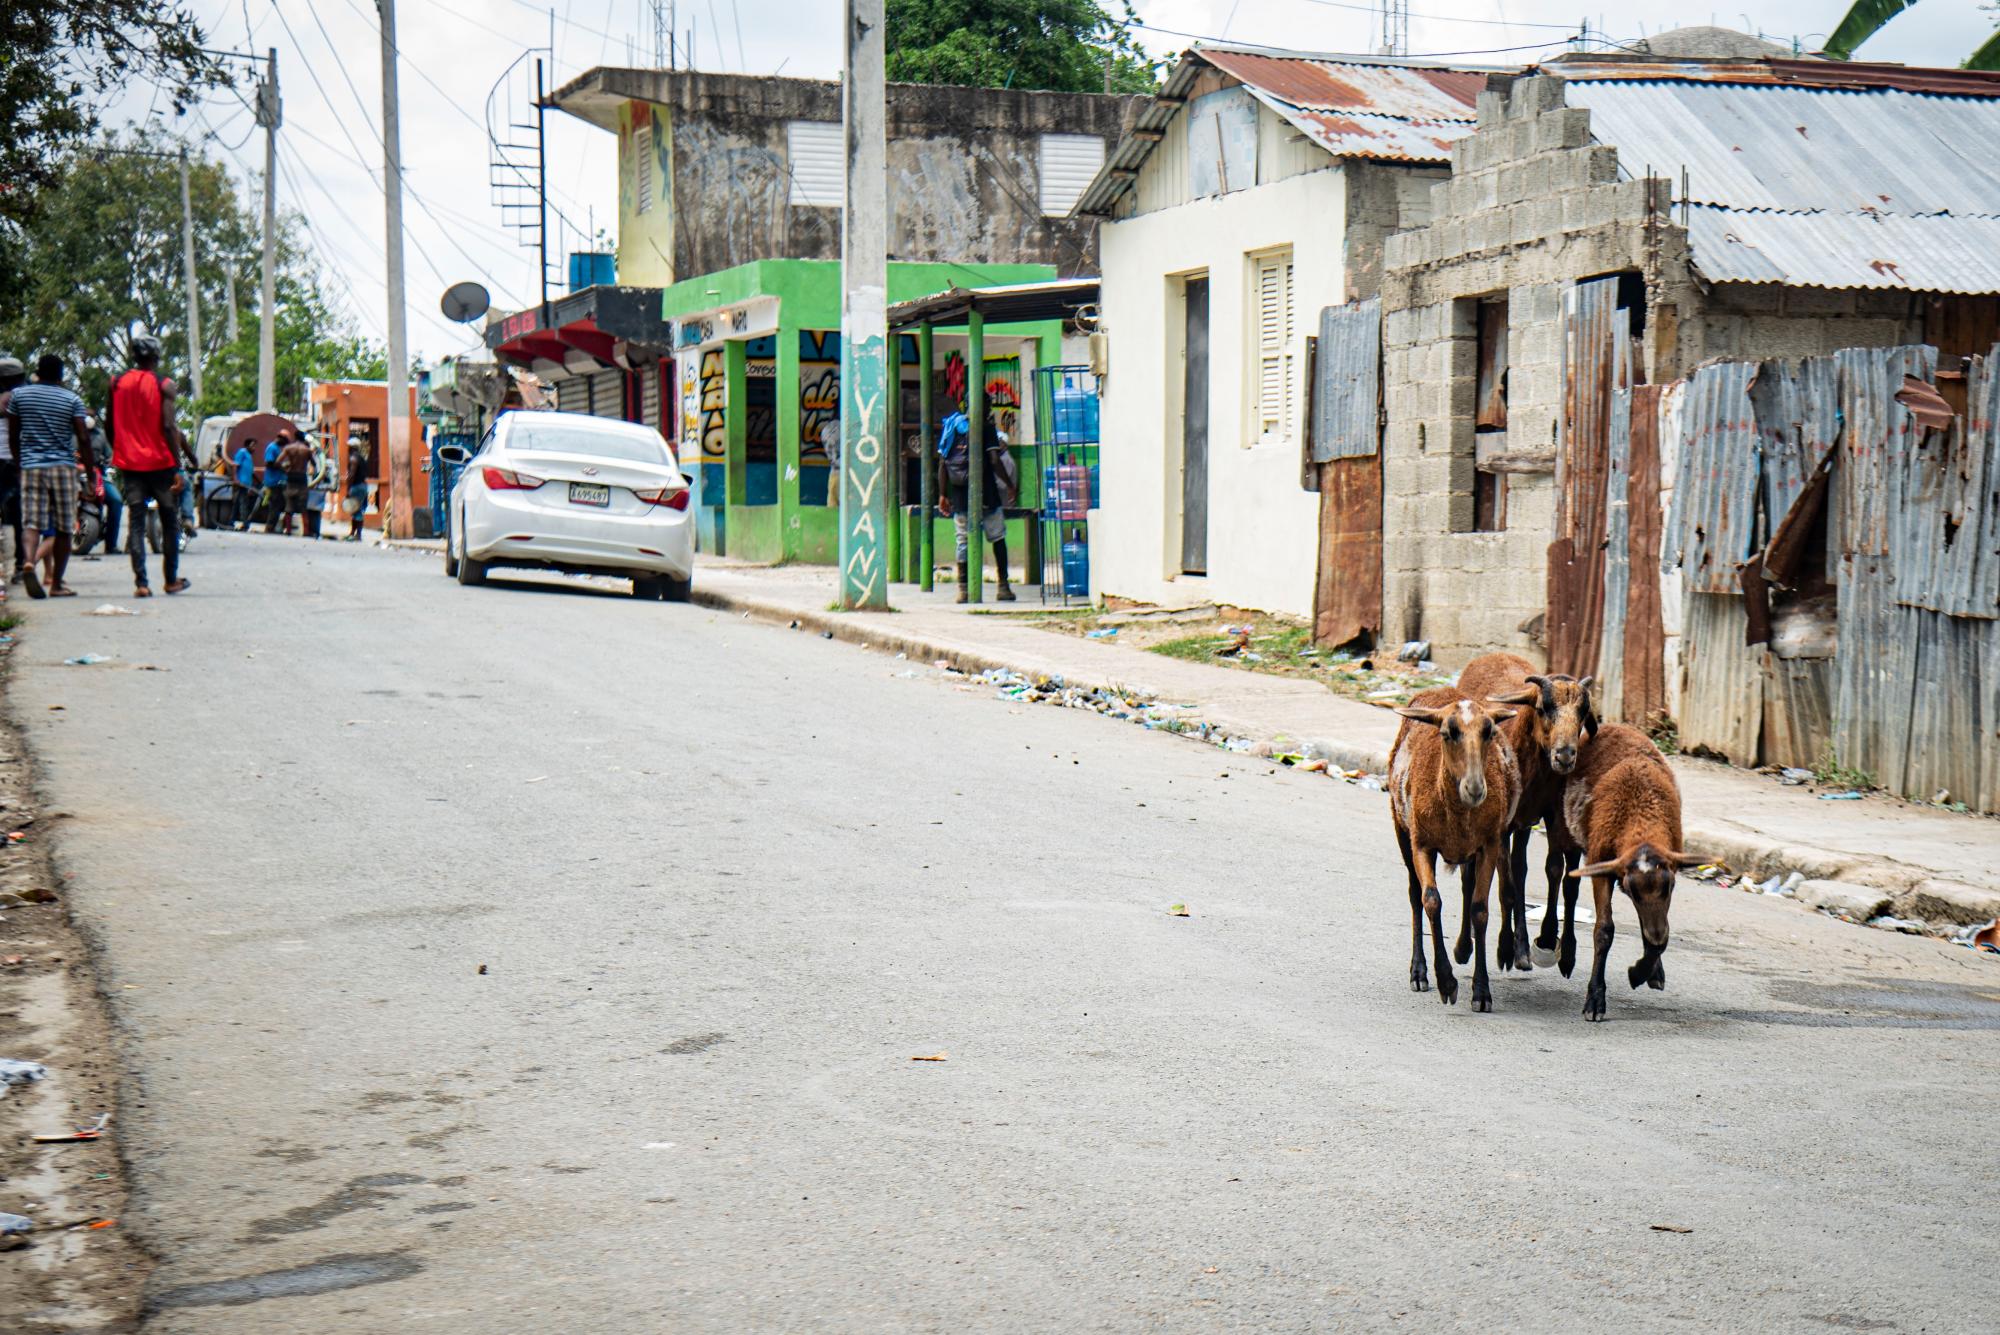 Los chivos conviven en buena armonía con los lugareños sin temor a ser sacrificados, así pasean por la calle en total tranquilidad